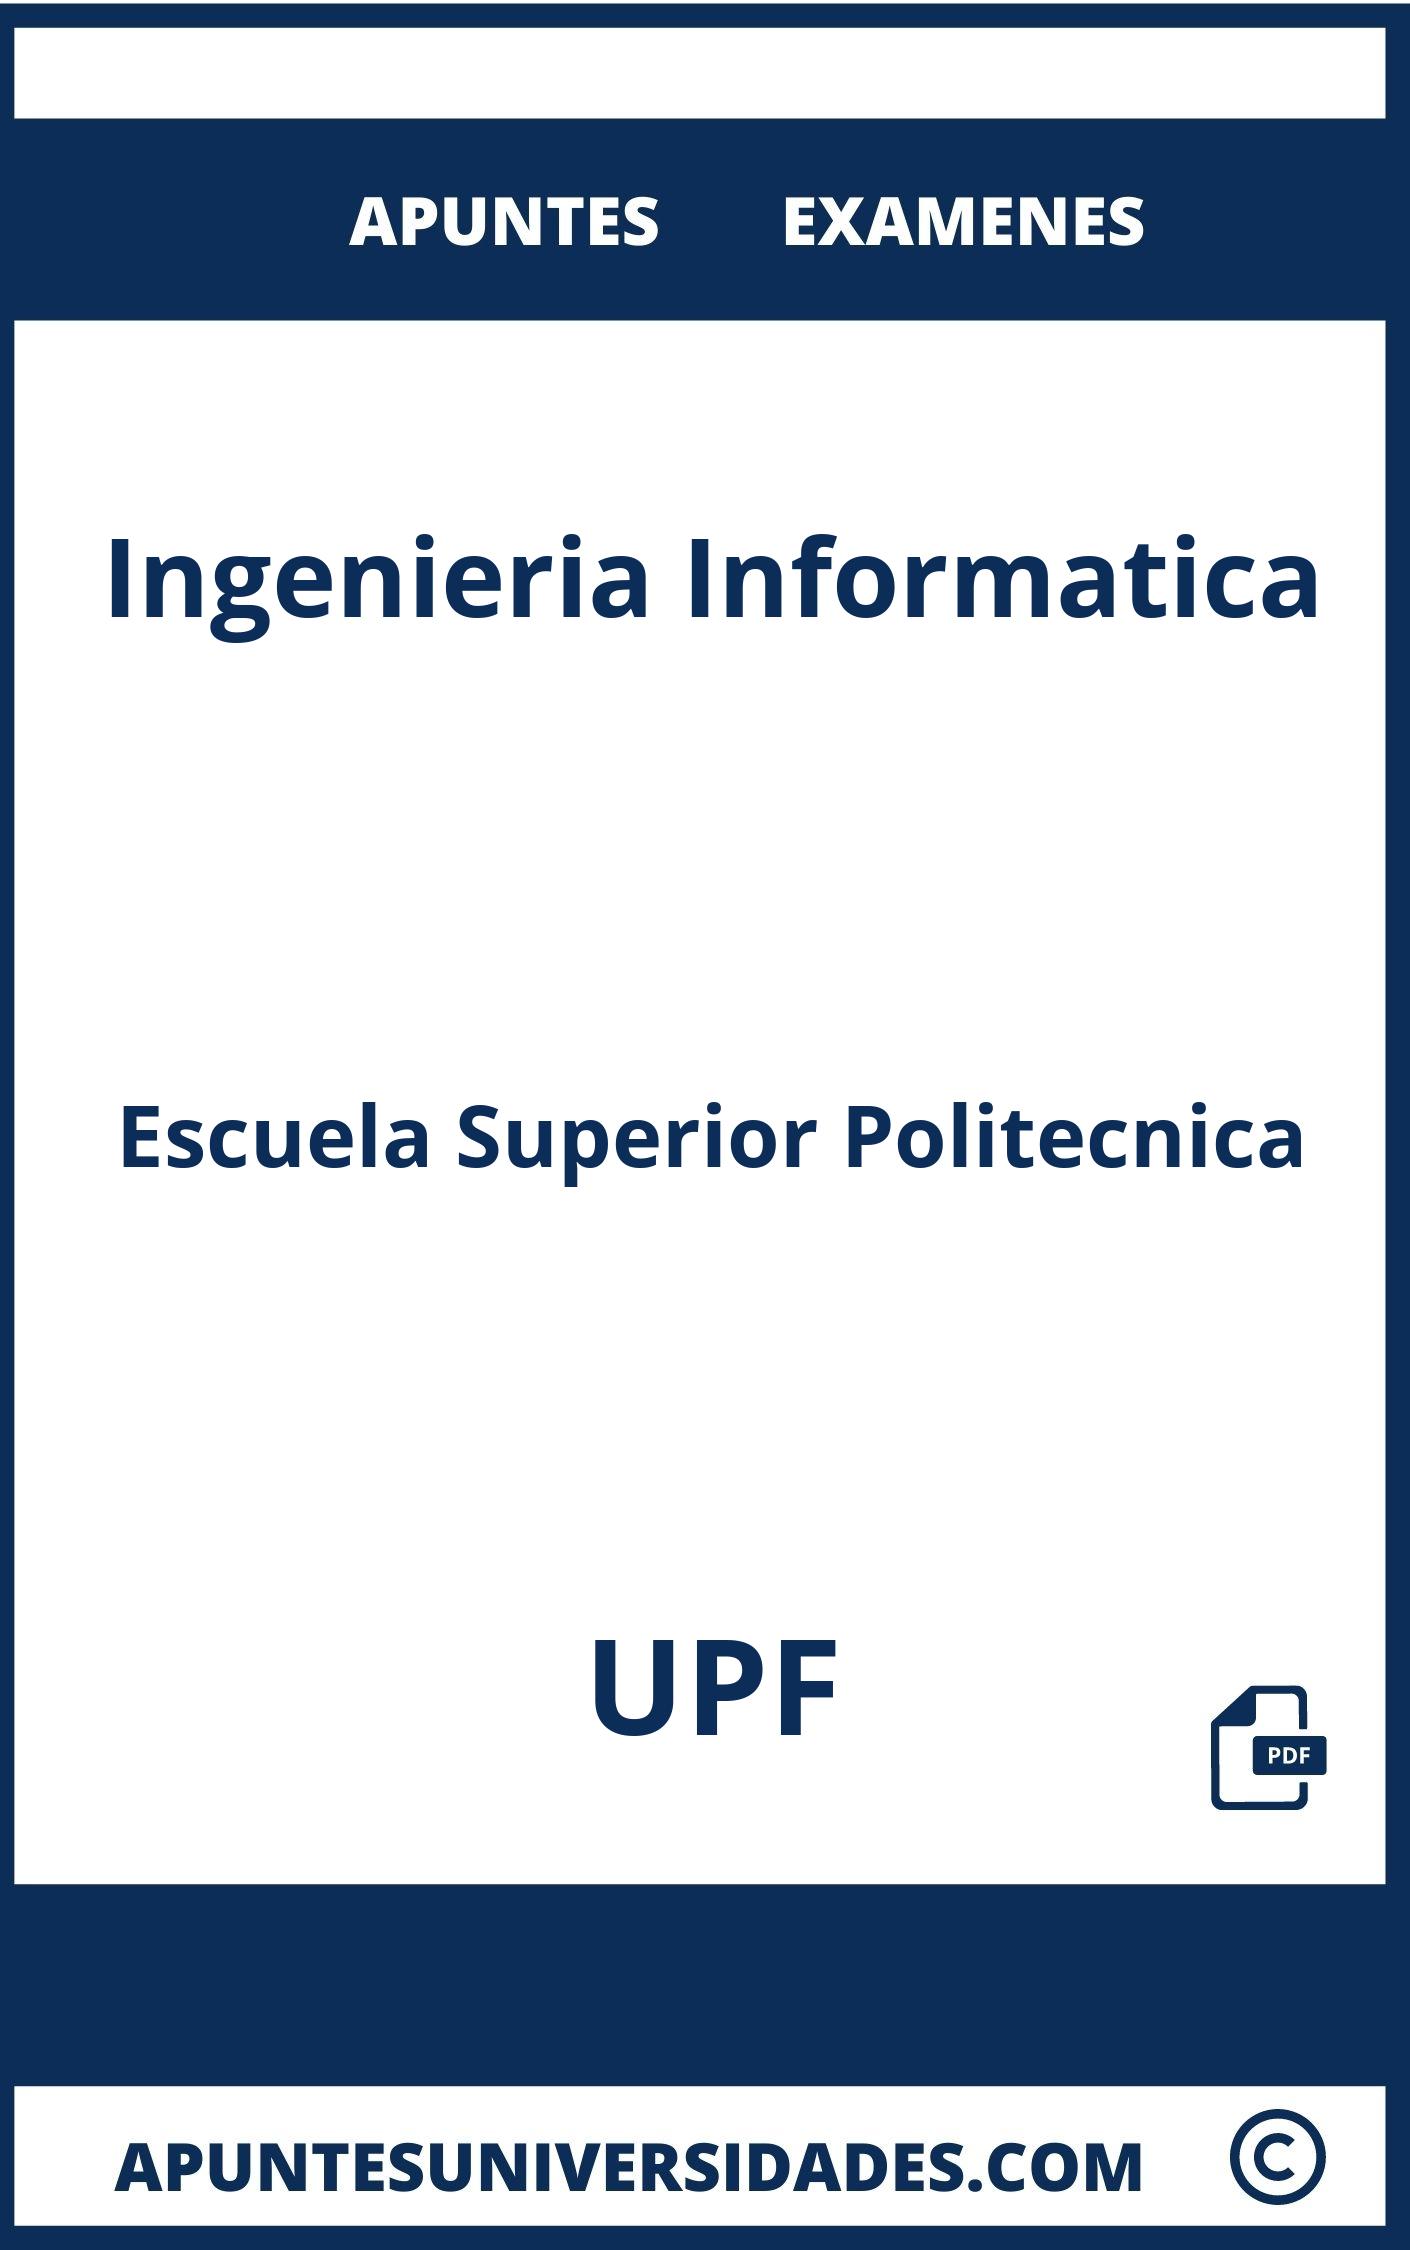 Apuntes y Examenes de Ingenieria Informatica UPF